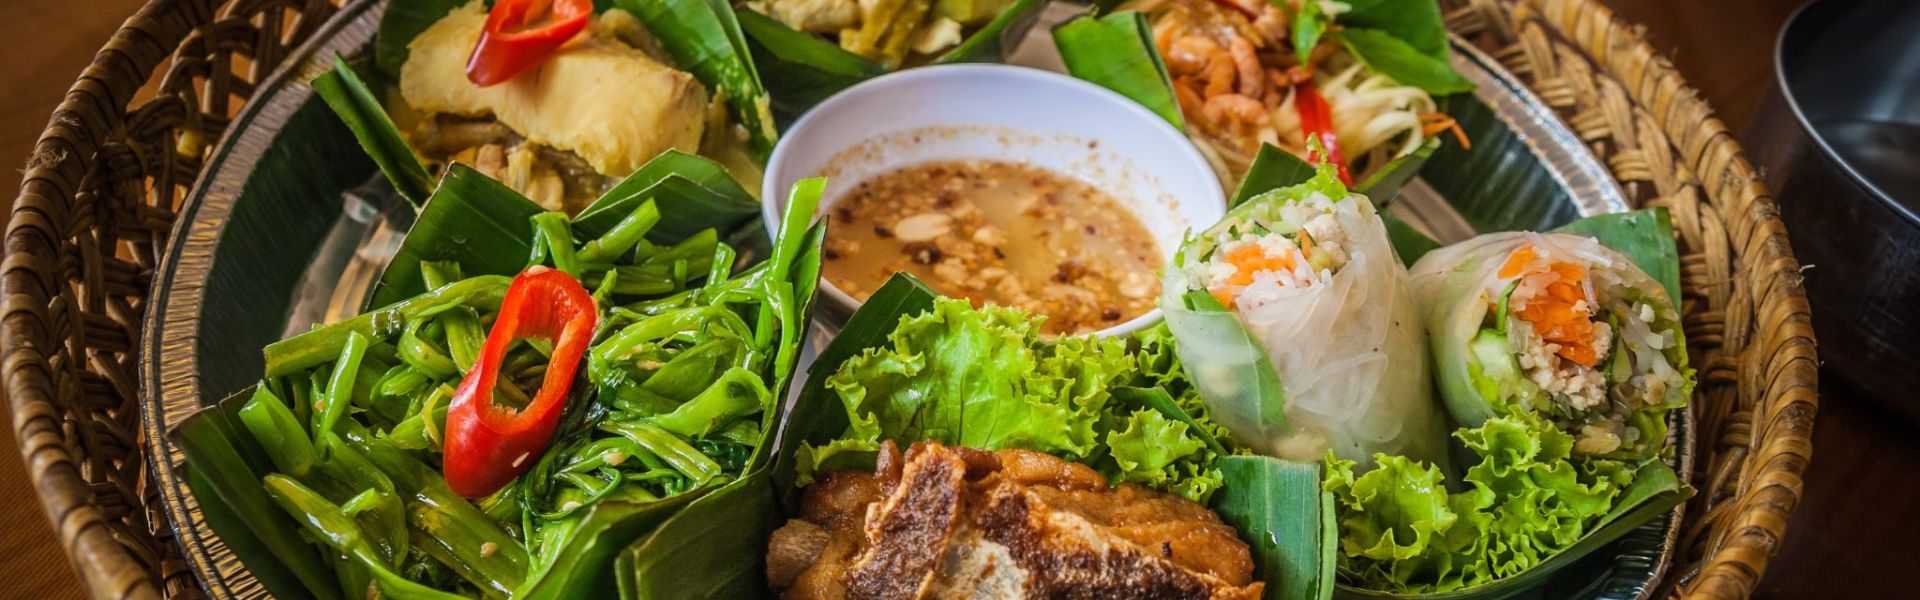 15 platos imperdibles de la cocina camboyana | Viajes a Camboya